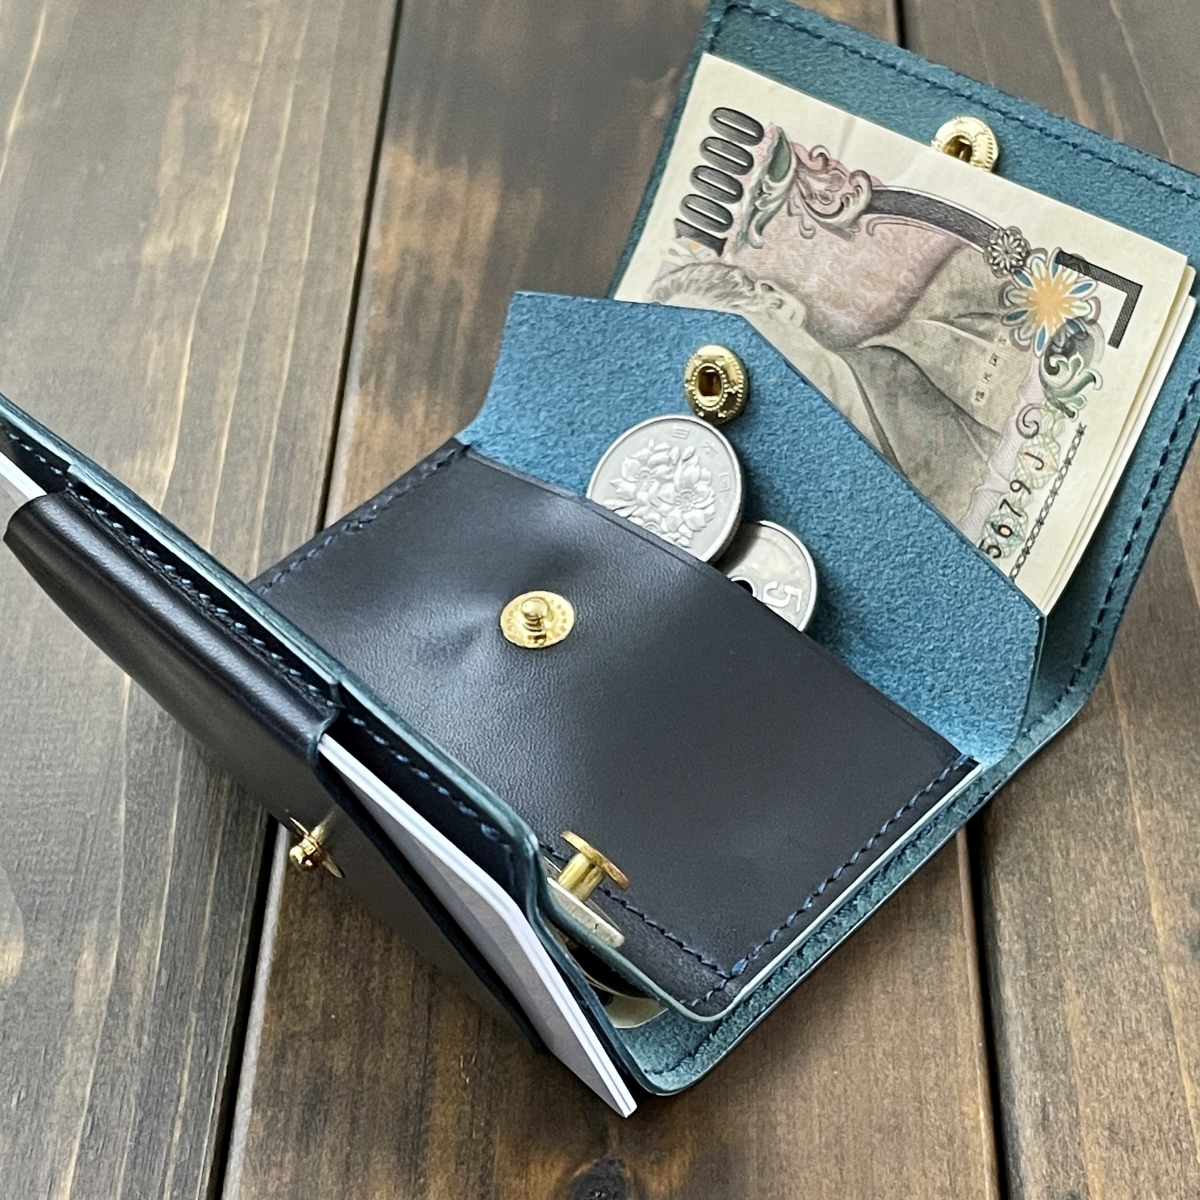 RADICAlatika итальянский кожа темно-синий compact кошелек Mini бумажник тонкий легкий кошелек для мелочи . мужской женский подарок подарок 